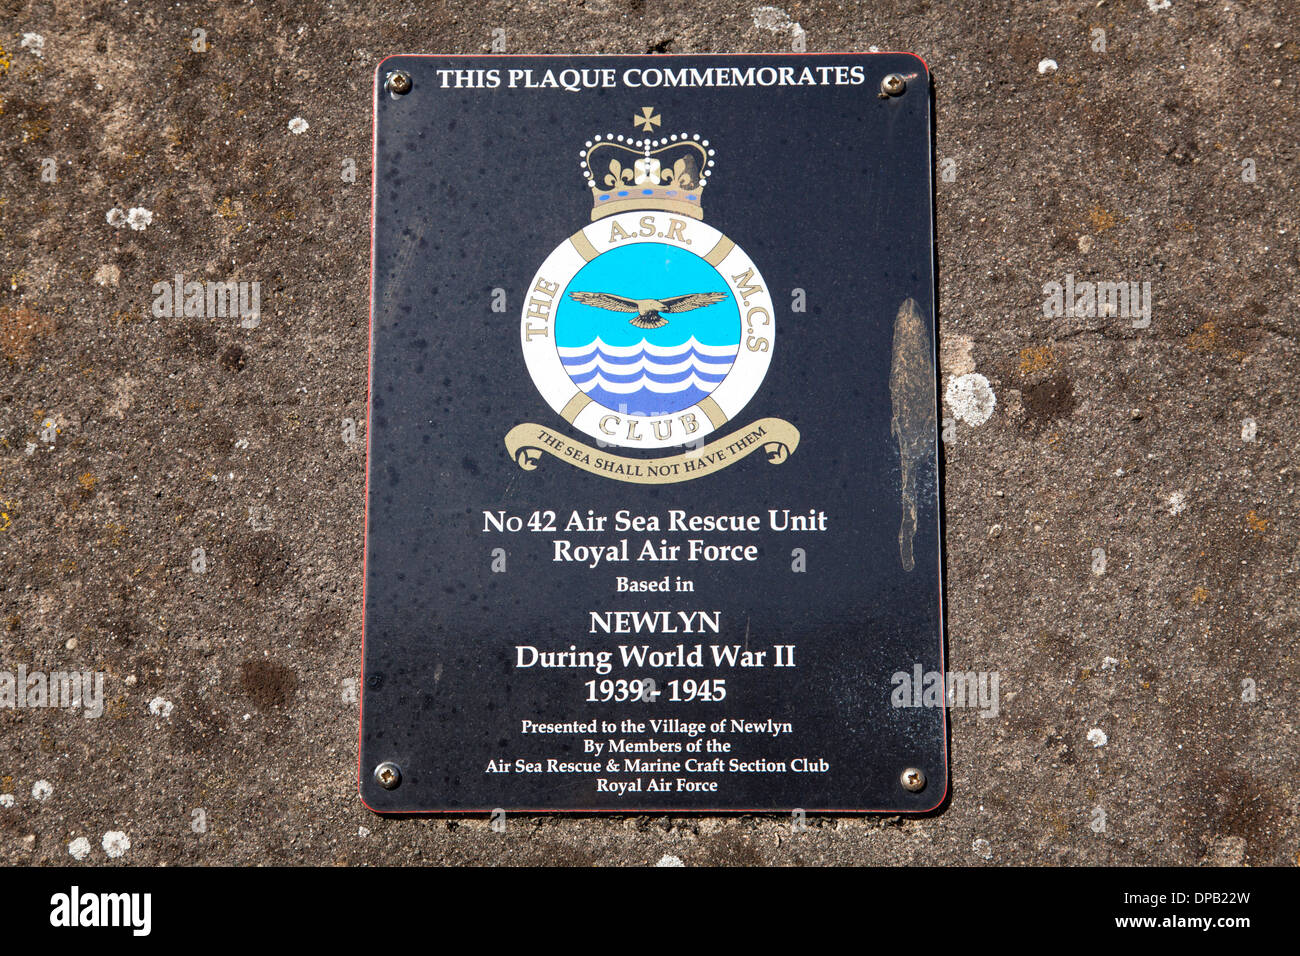 Una placa conmemorativa de la Real Fuerza Aérea nº42 Aire Unidad de Salvamento Marítimo con base en Newlyn, Cornualles, en el Reino Unido durante la Segunda Guerra Mundial. Foto de stock